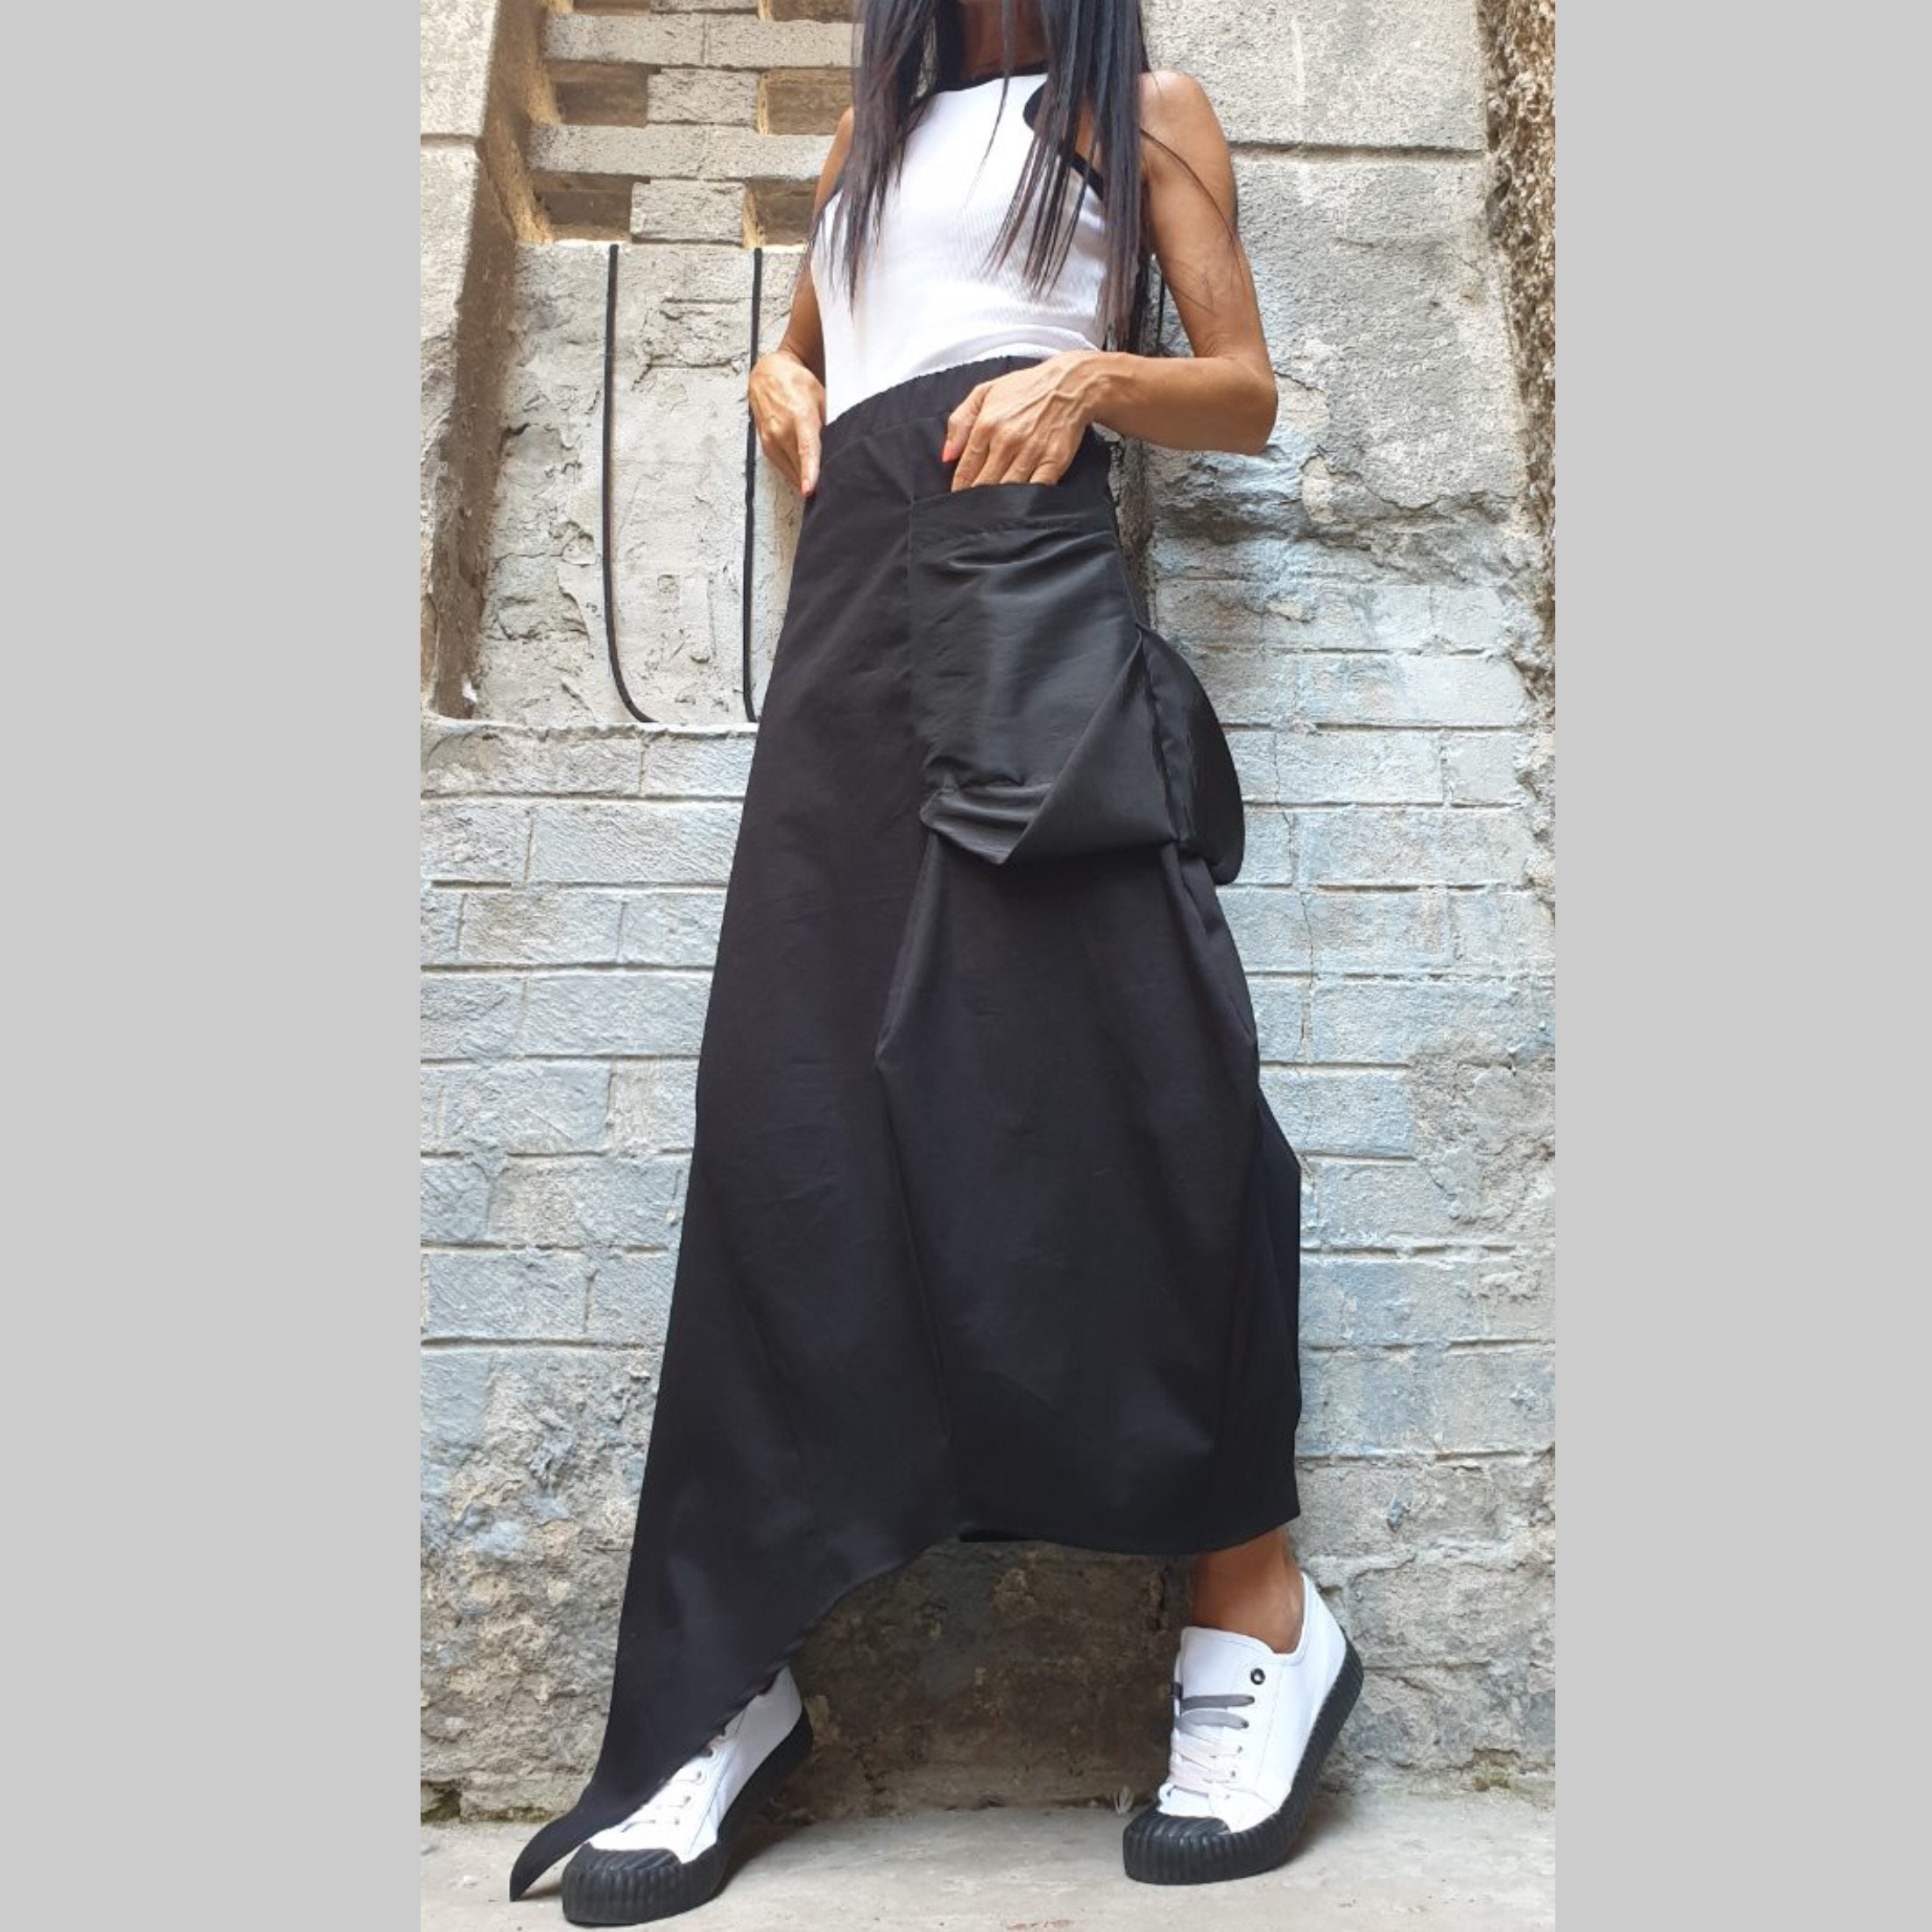 Falda negra extravagante Falda de fiesta de diseñador Falda corta